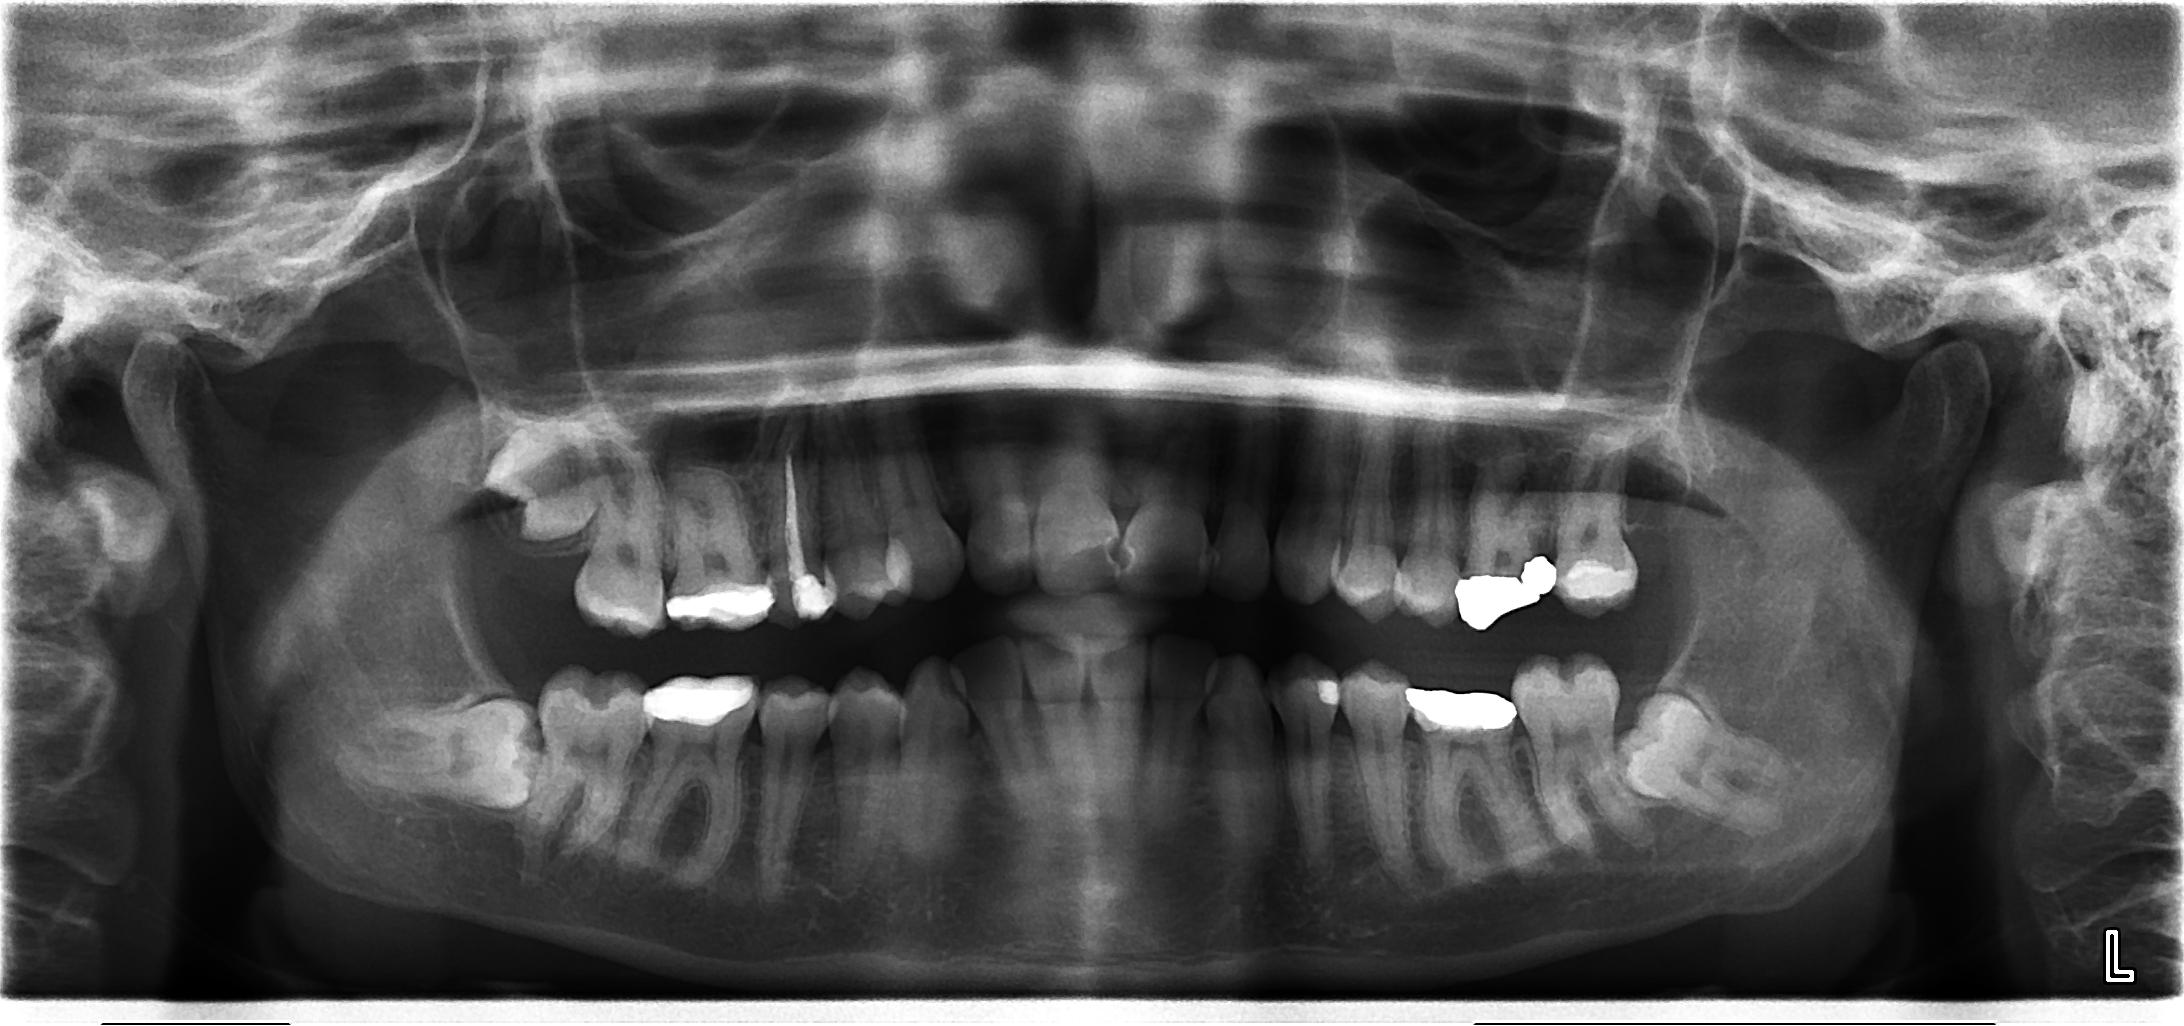 karabegovic-rx-denti.jpg